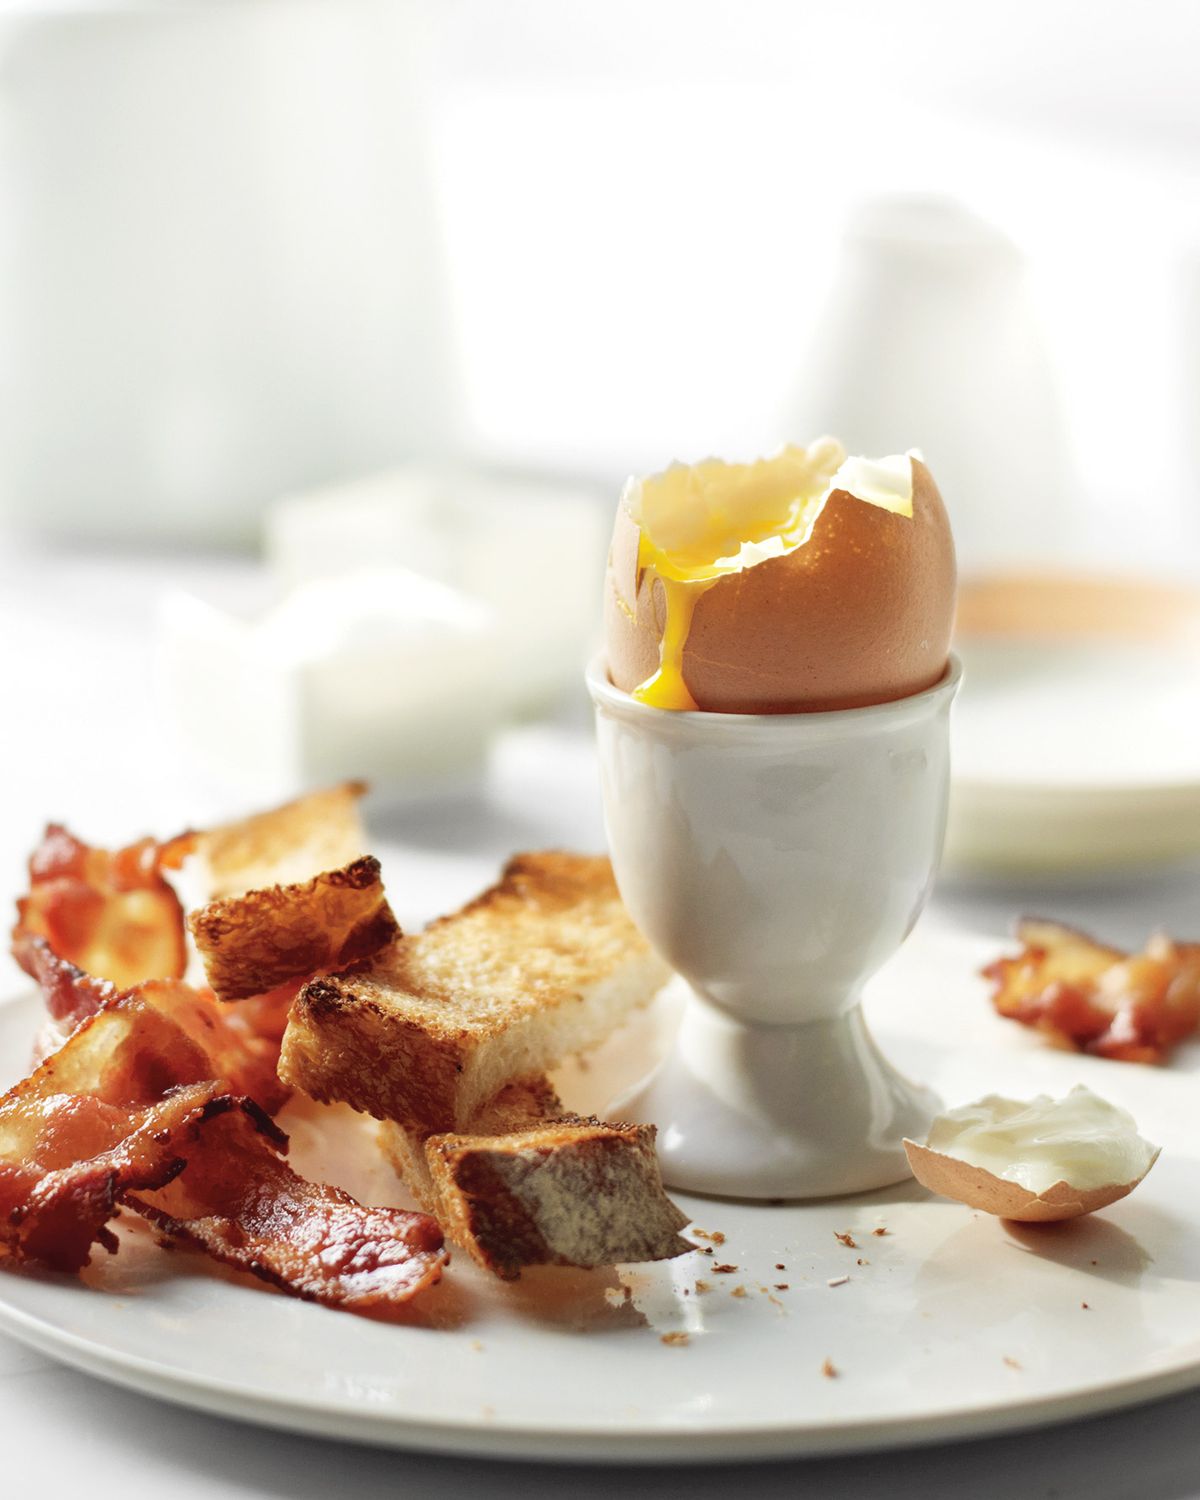 Gekochte Eier 101: Eine Schritt-für-Schritt-Anleitung für hart, mittel und weich gekochte Eier